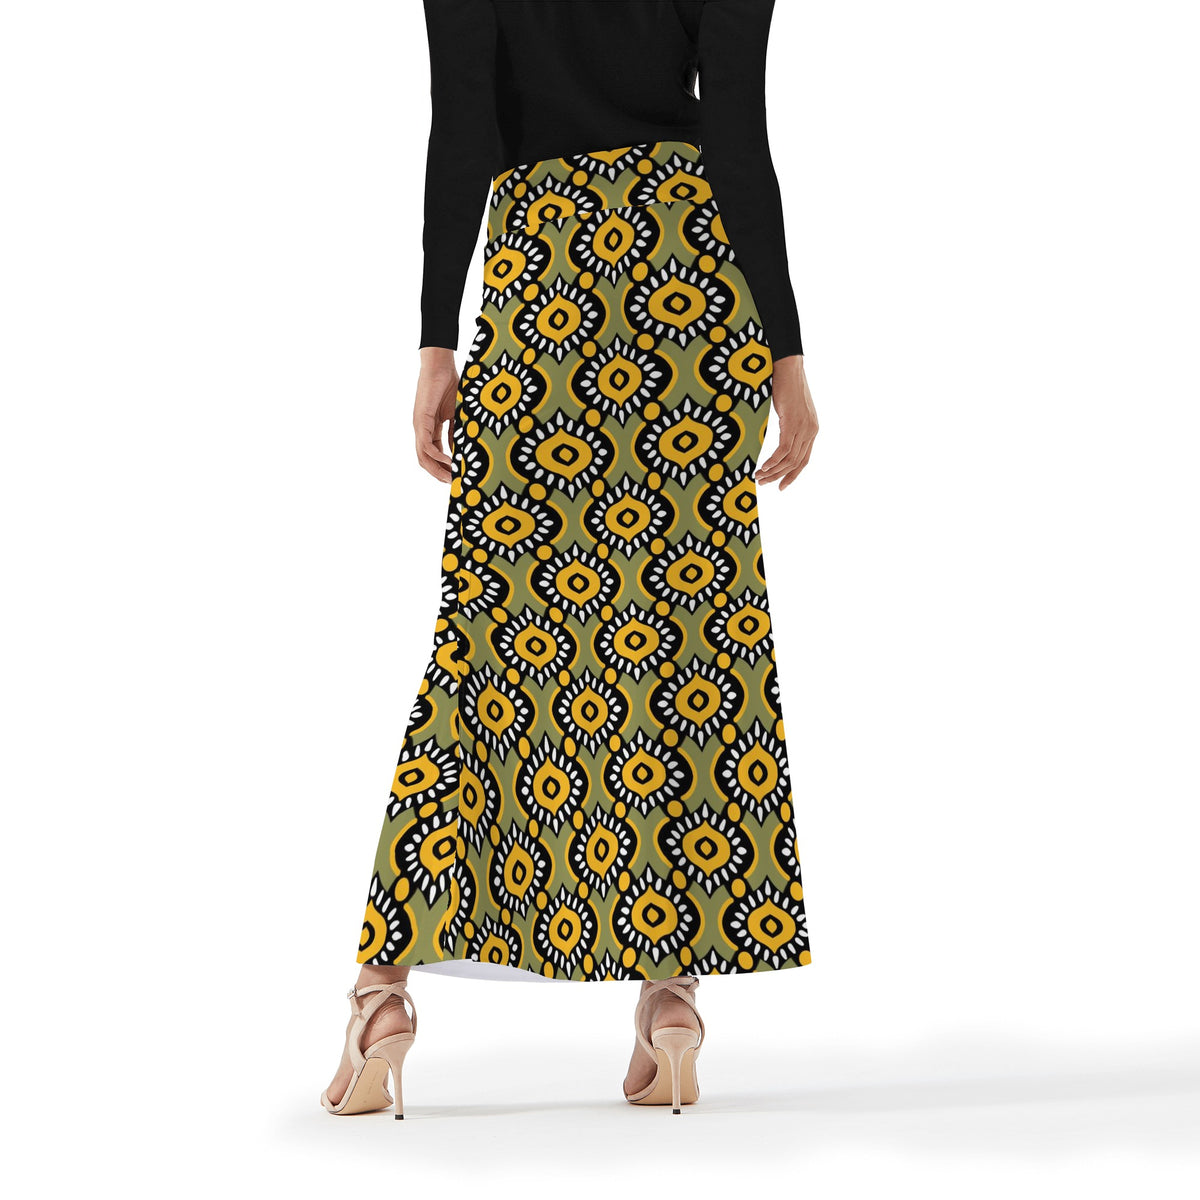 Women's Full Length Skirt in Ankara Prints Popcustoms